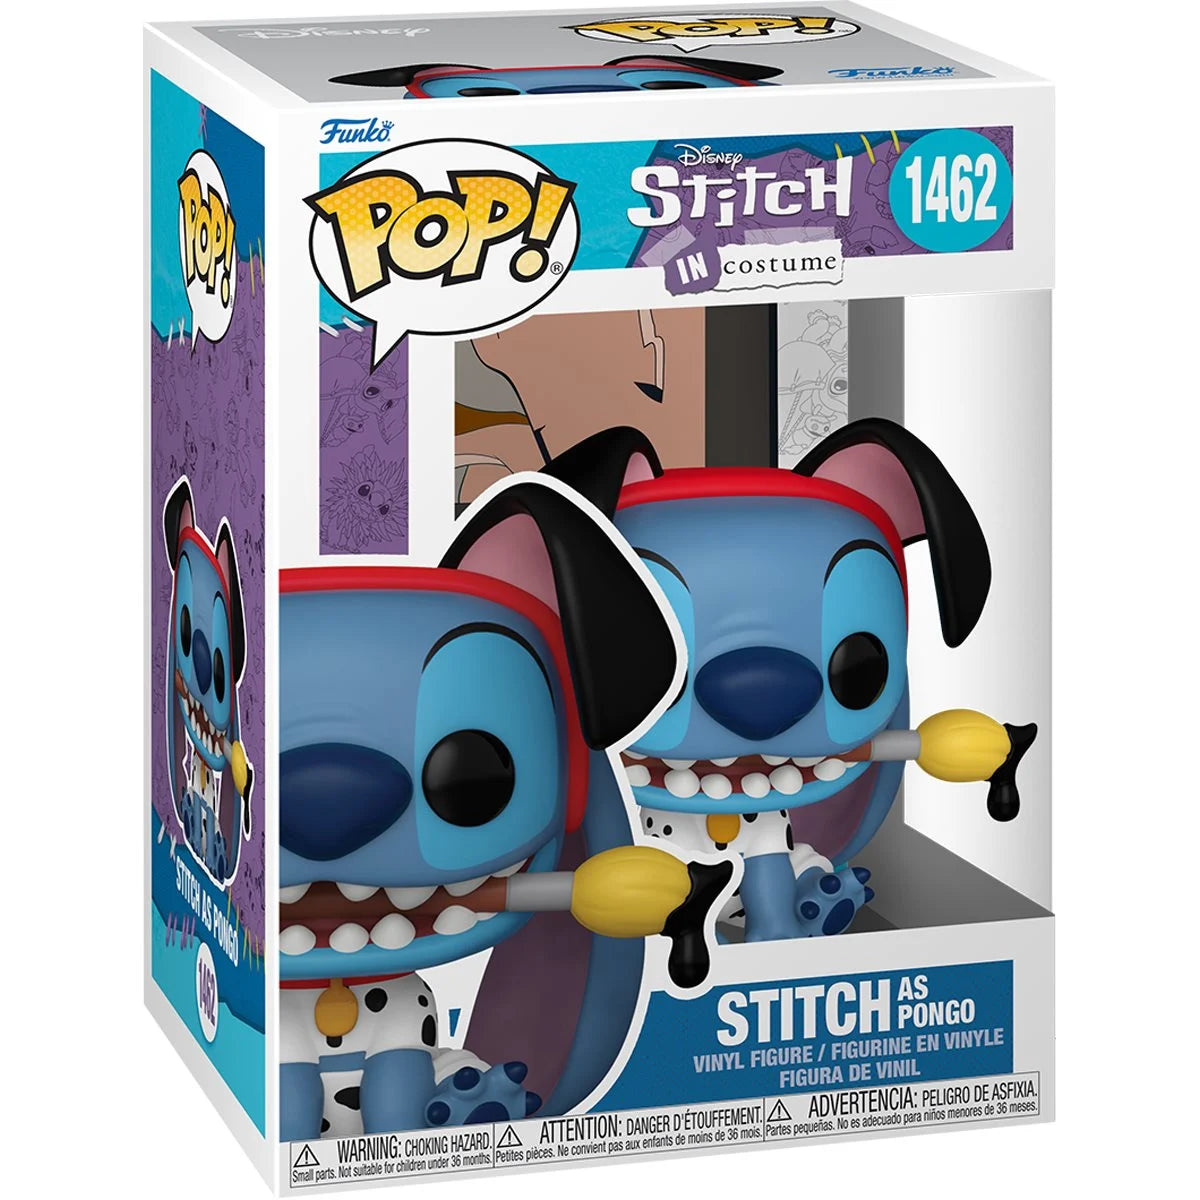 Funko Pop! Lilo & Stitch - Costume Stitch as Pongo